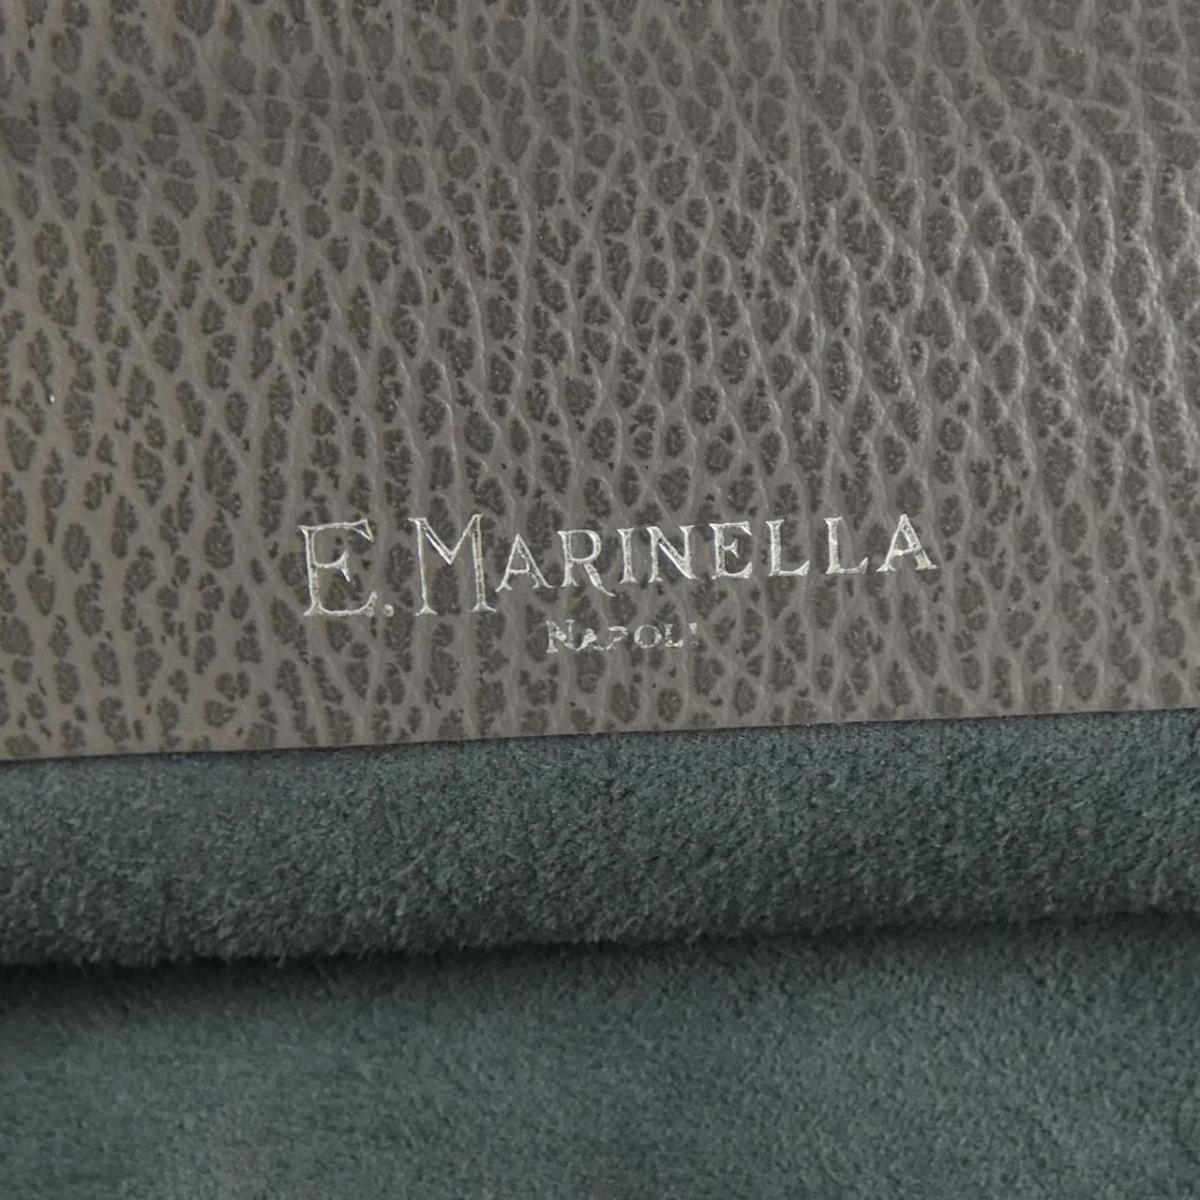 Marinella E. Marinella Bag at